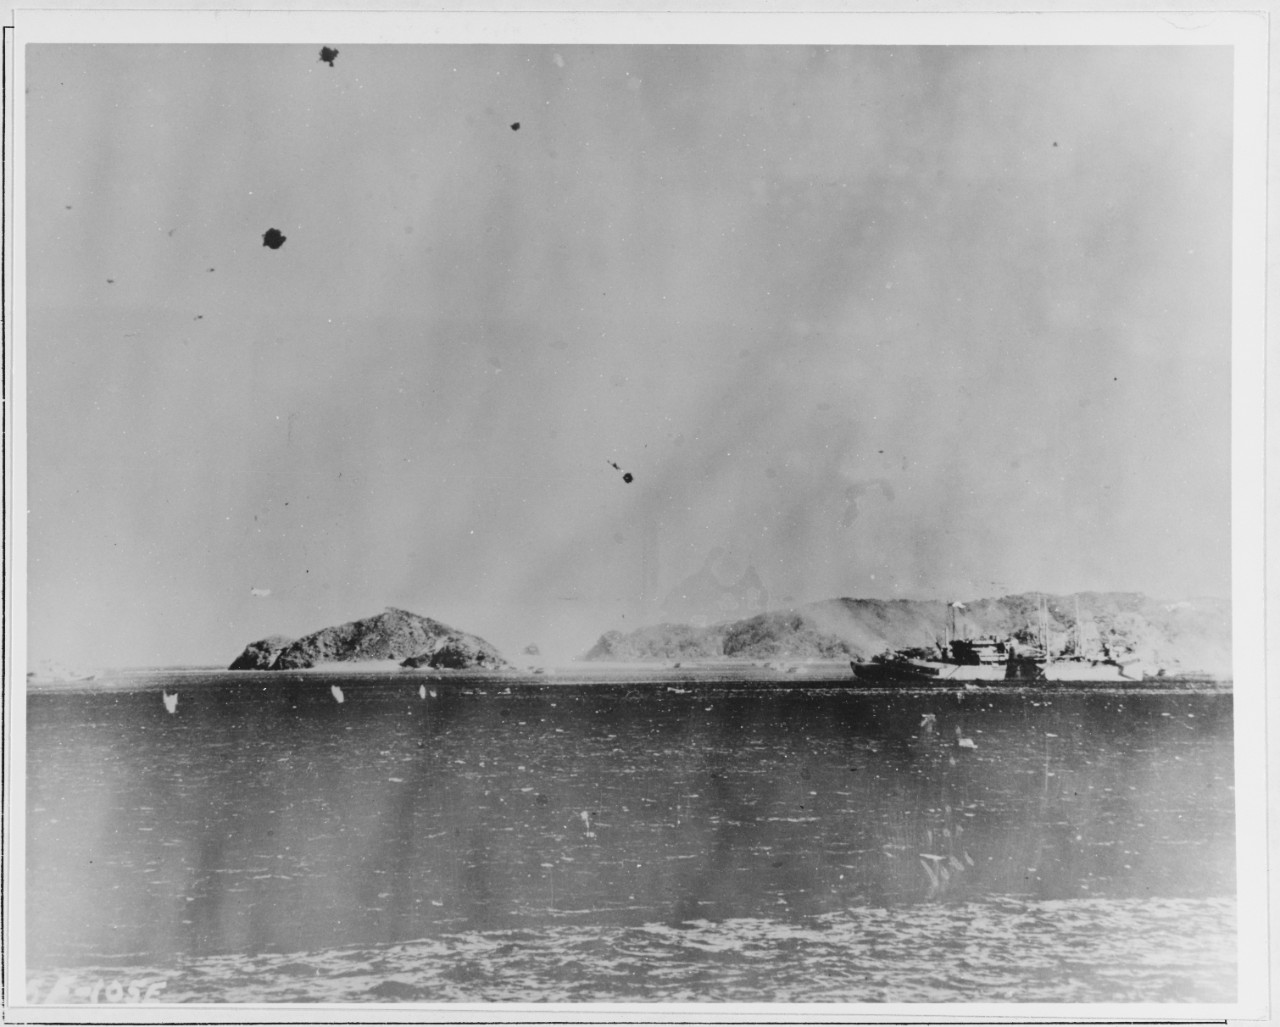 Attack on USS ST. GEORGE (AV-16)